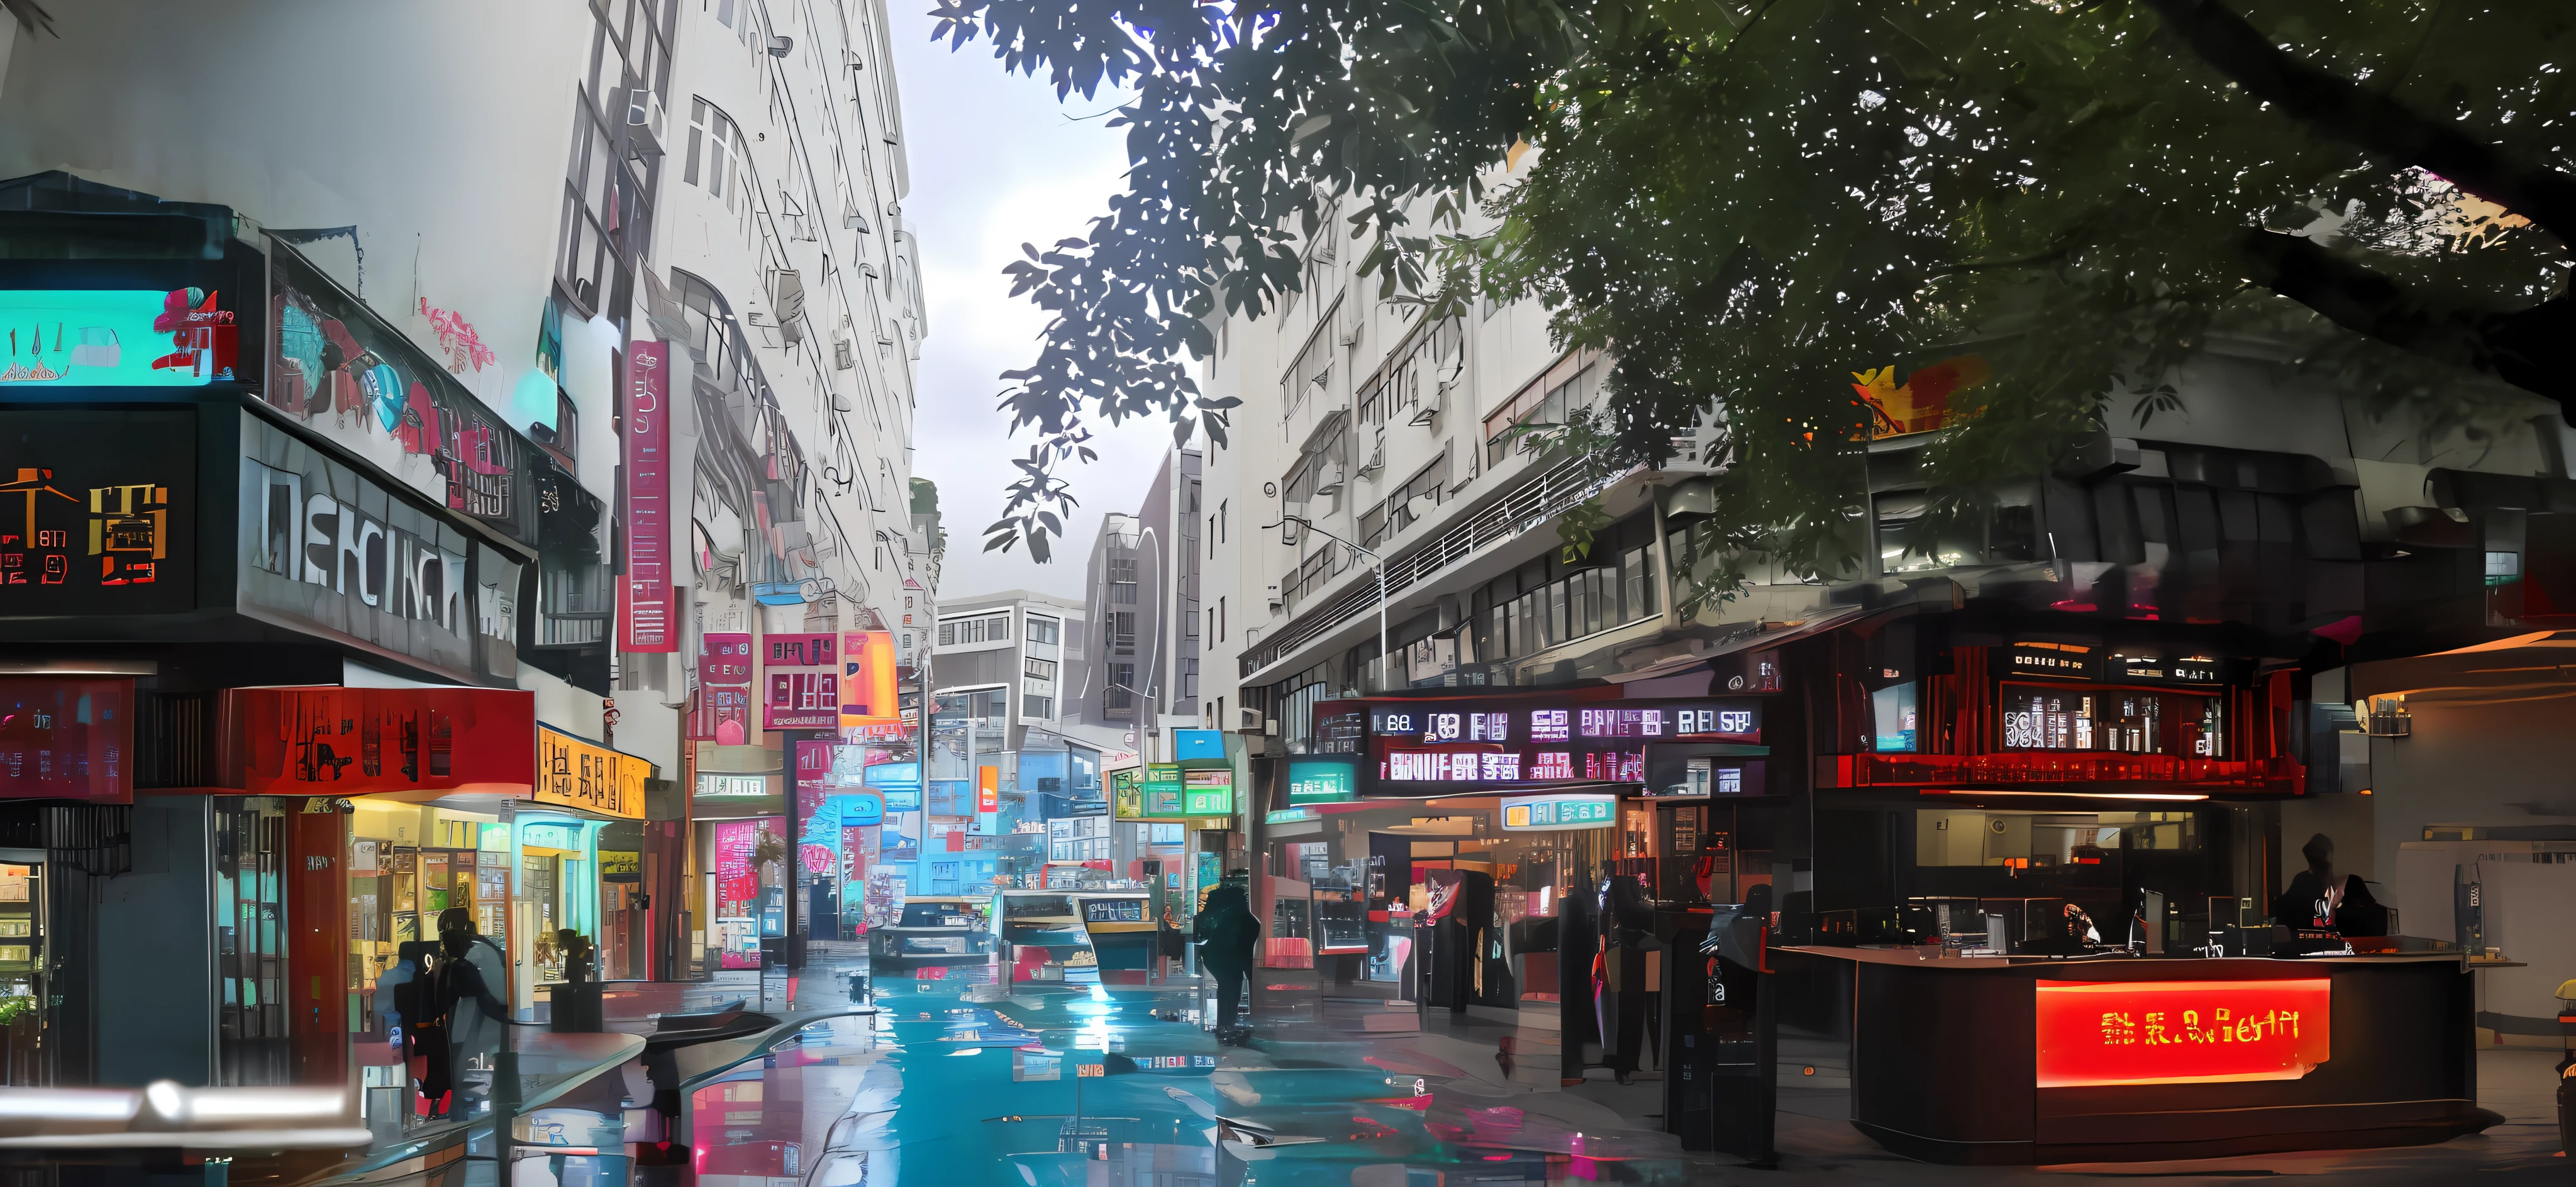 香港スタイルのバー,香港の街路,オープンバー,ネオンライト,大型看板,優雅さ,高級化する,味がある,極限まで高めたディテール,暖かく温かい光